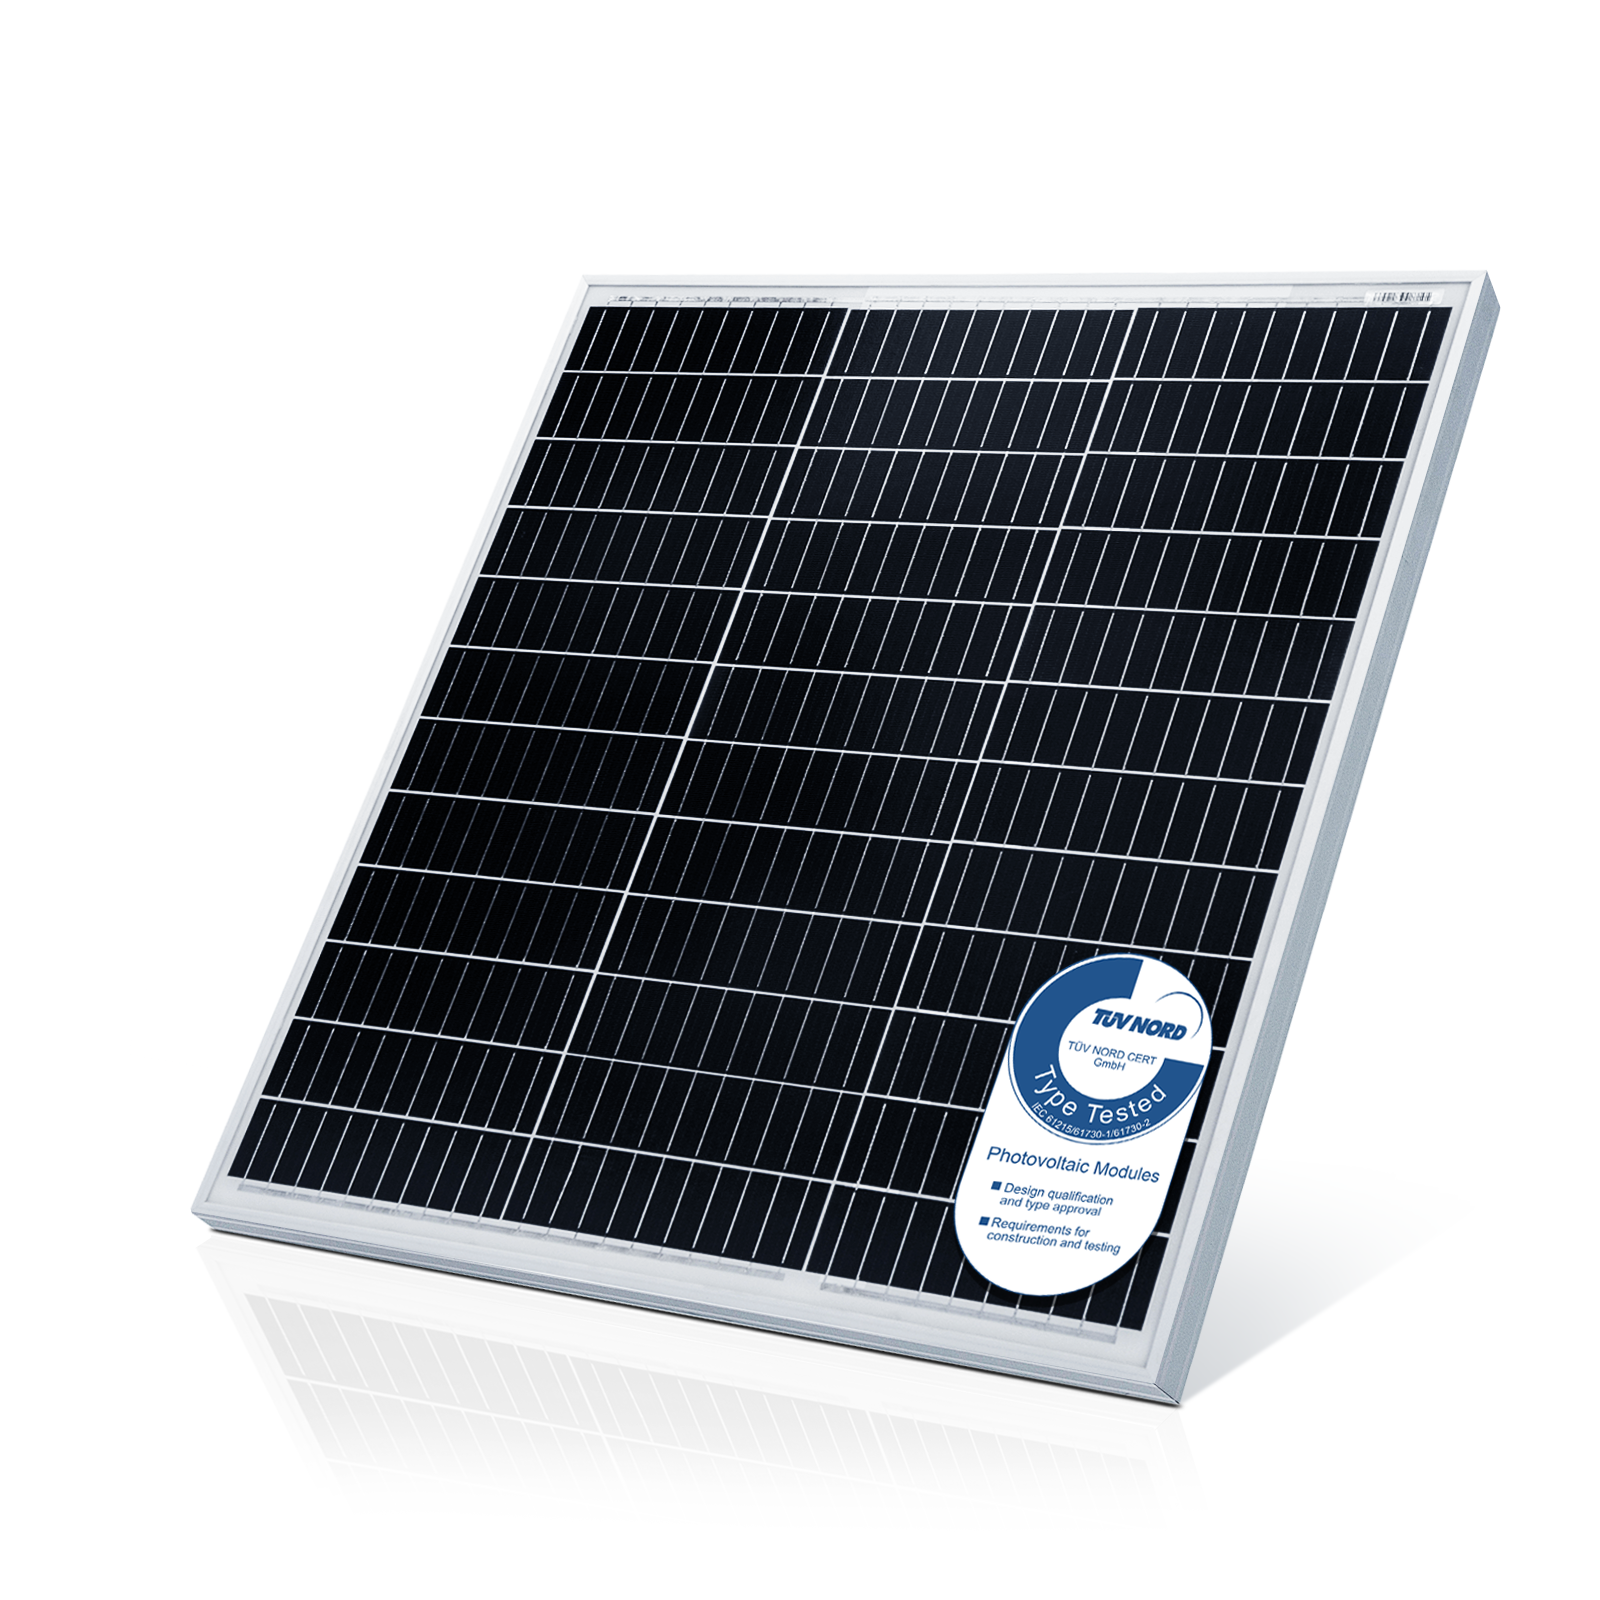 4: Solpanel monokrystallinsk - 100 W, 18 V til 12 V batterier, solcelle, ladekabel, silicium